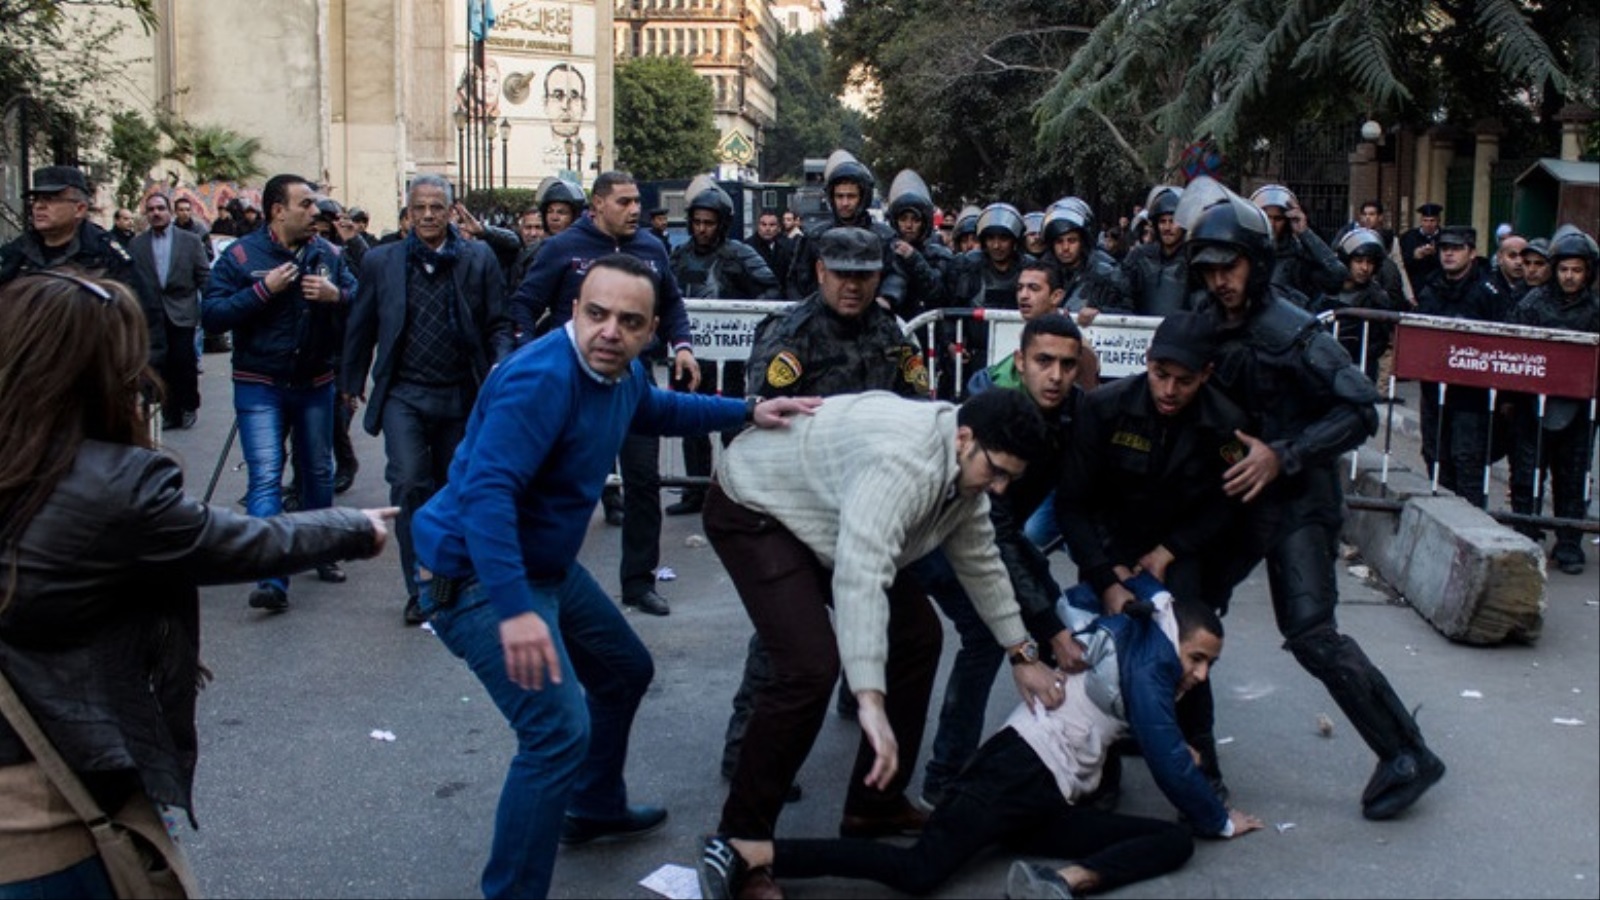 شرطة ورجال أمن سريون يعتقلون أحد المتظاهرين في القاهرة مطلع العام الماضي (الأوروبية)